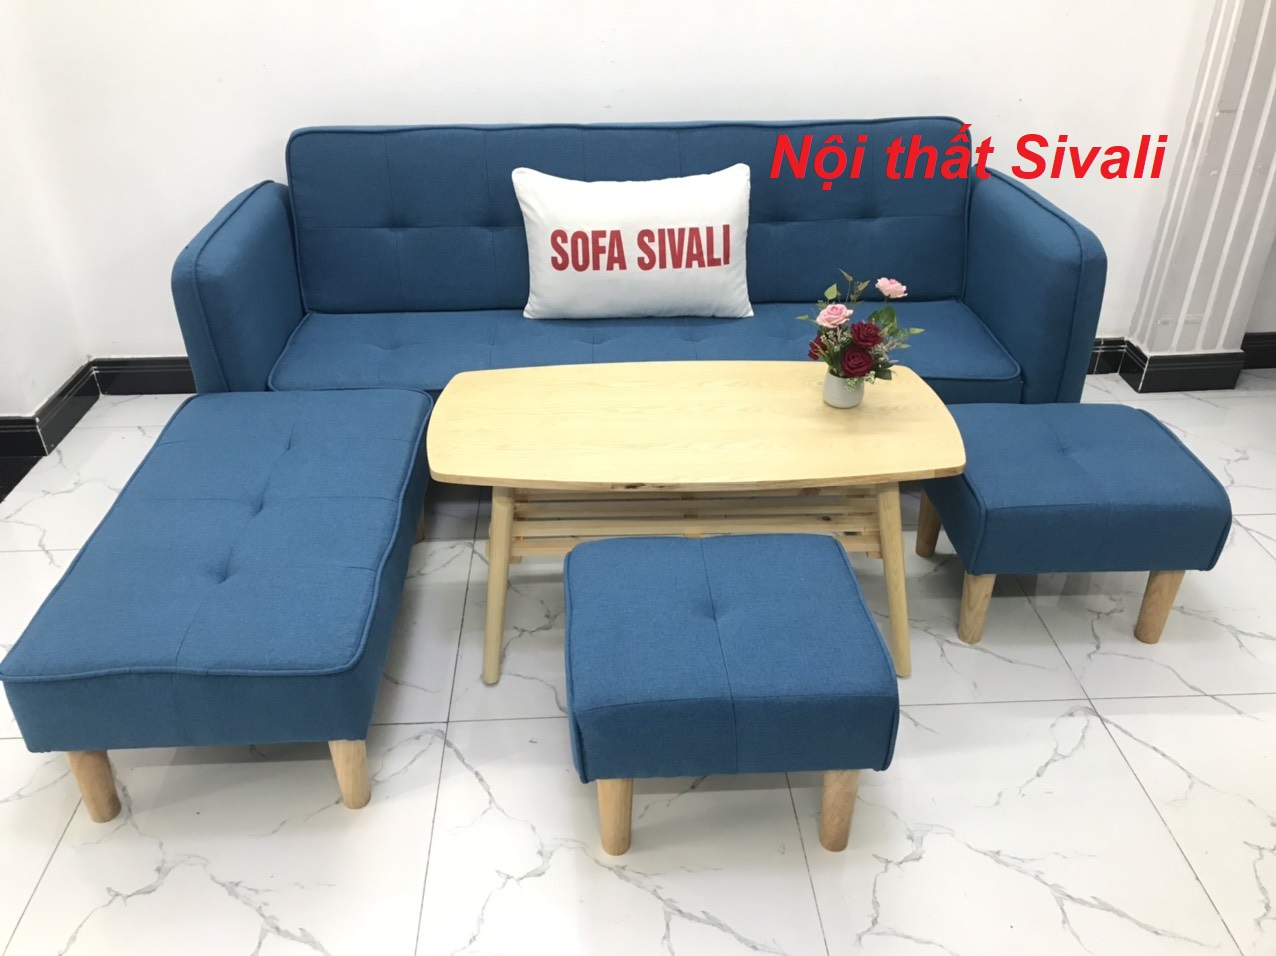 [HCM]Combo bộ ghế salon sofa góc L phòng khách giá rẻ sofa màu xanh dương da trời nước biển mini nhỏ Nội thất Sivali HCM Tphcm Hồ Chí Minh SG